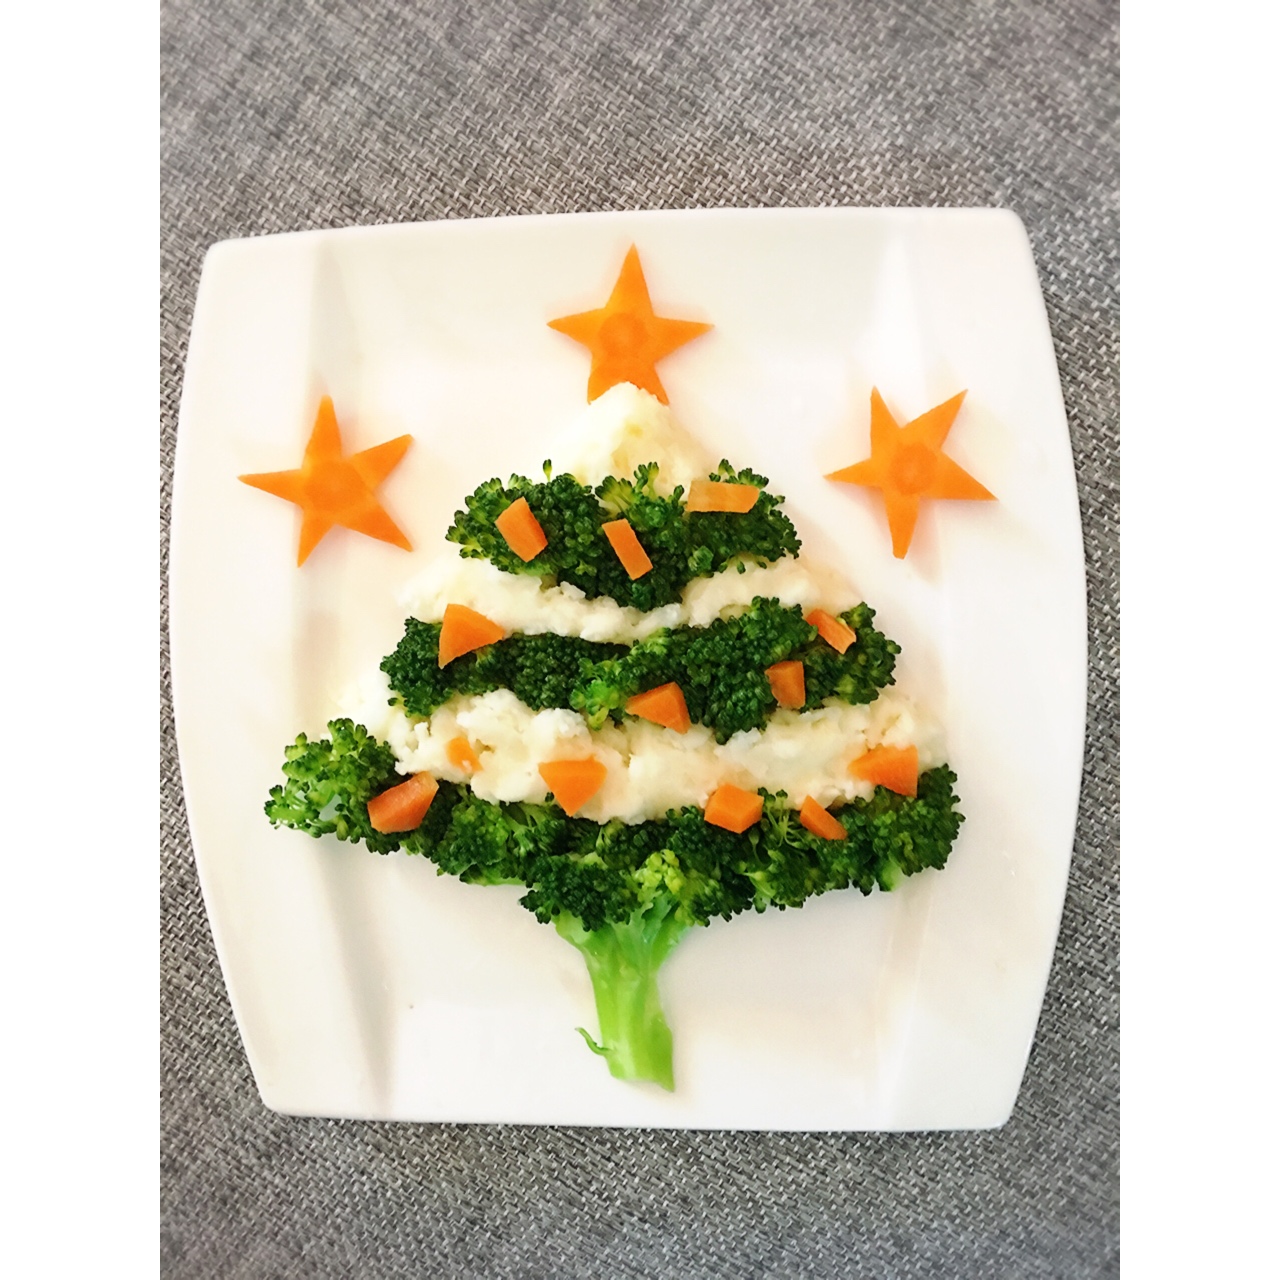 🎄圣诞树造型饭🎄